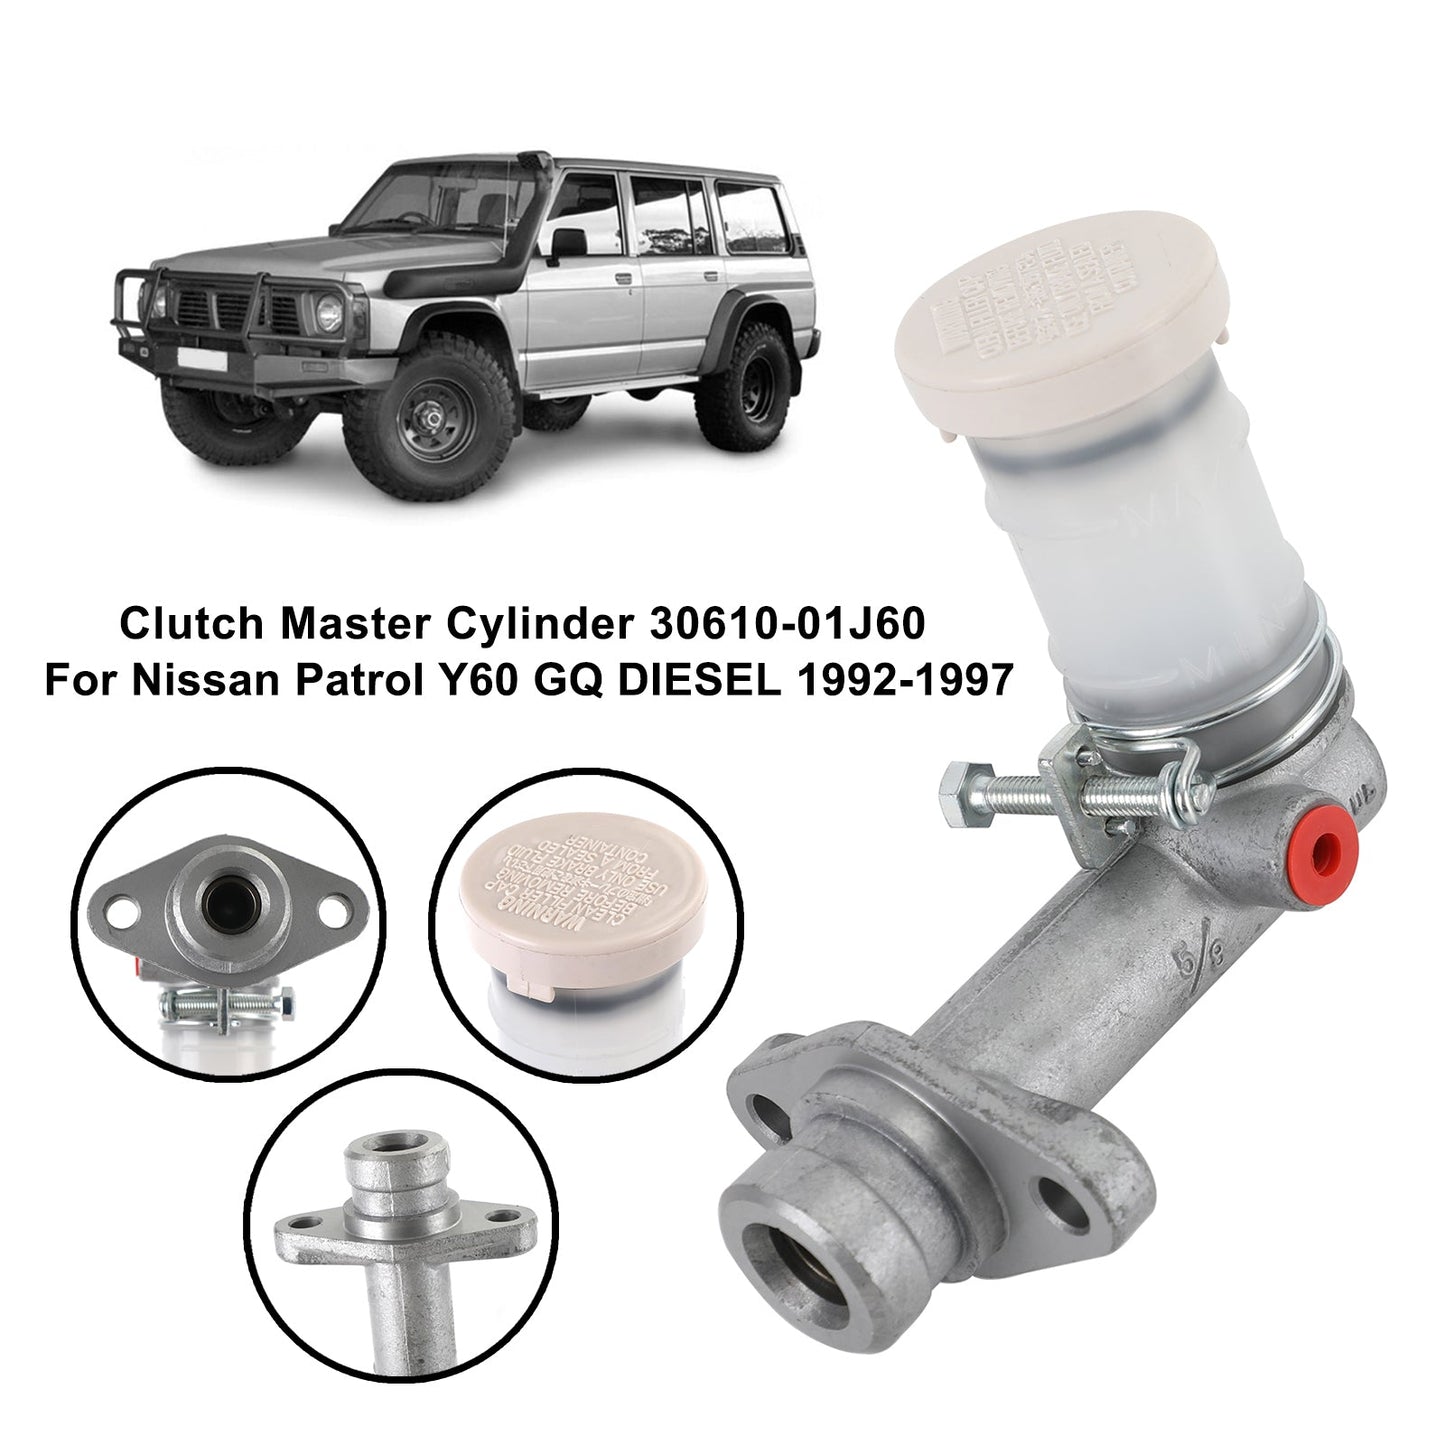 Clutch Master Cylinder 30610-01J60 For Nissan Patrol Y60 GQ DIESEL 1992-1997